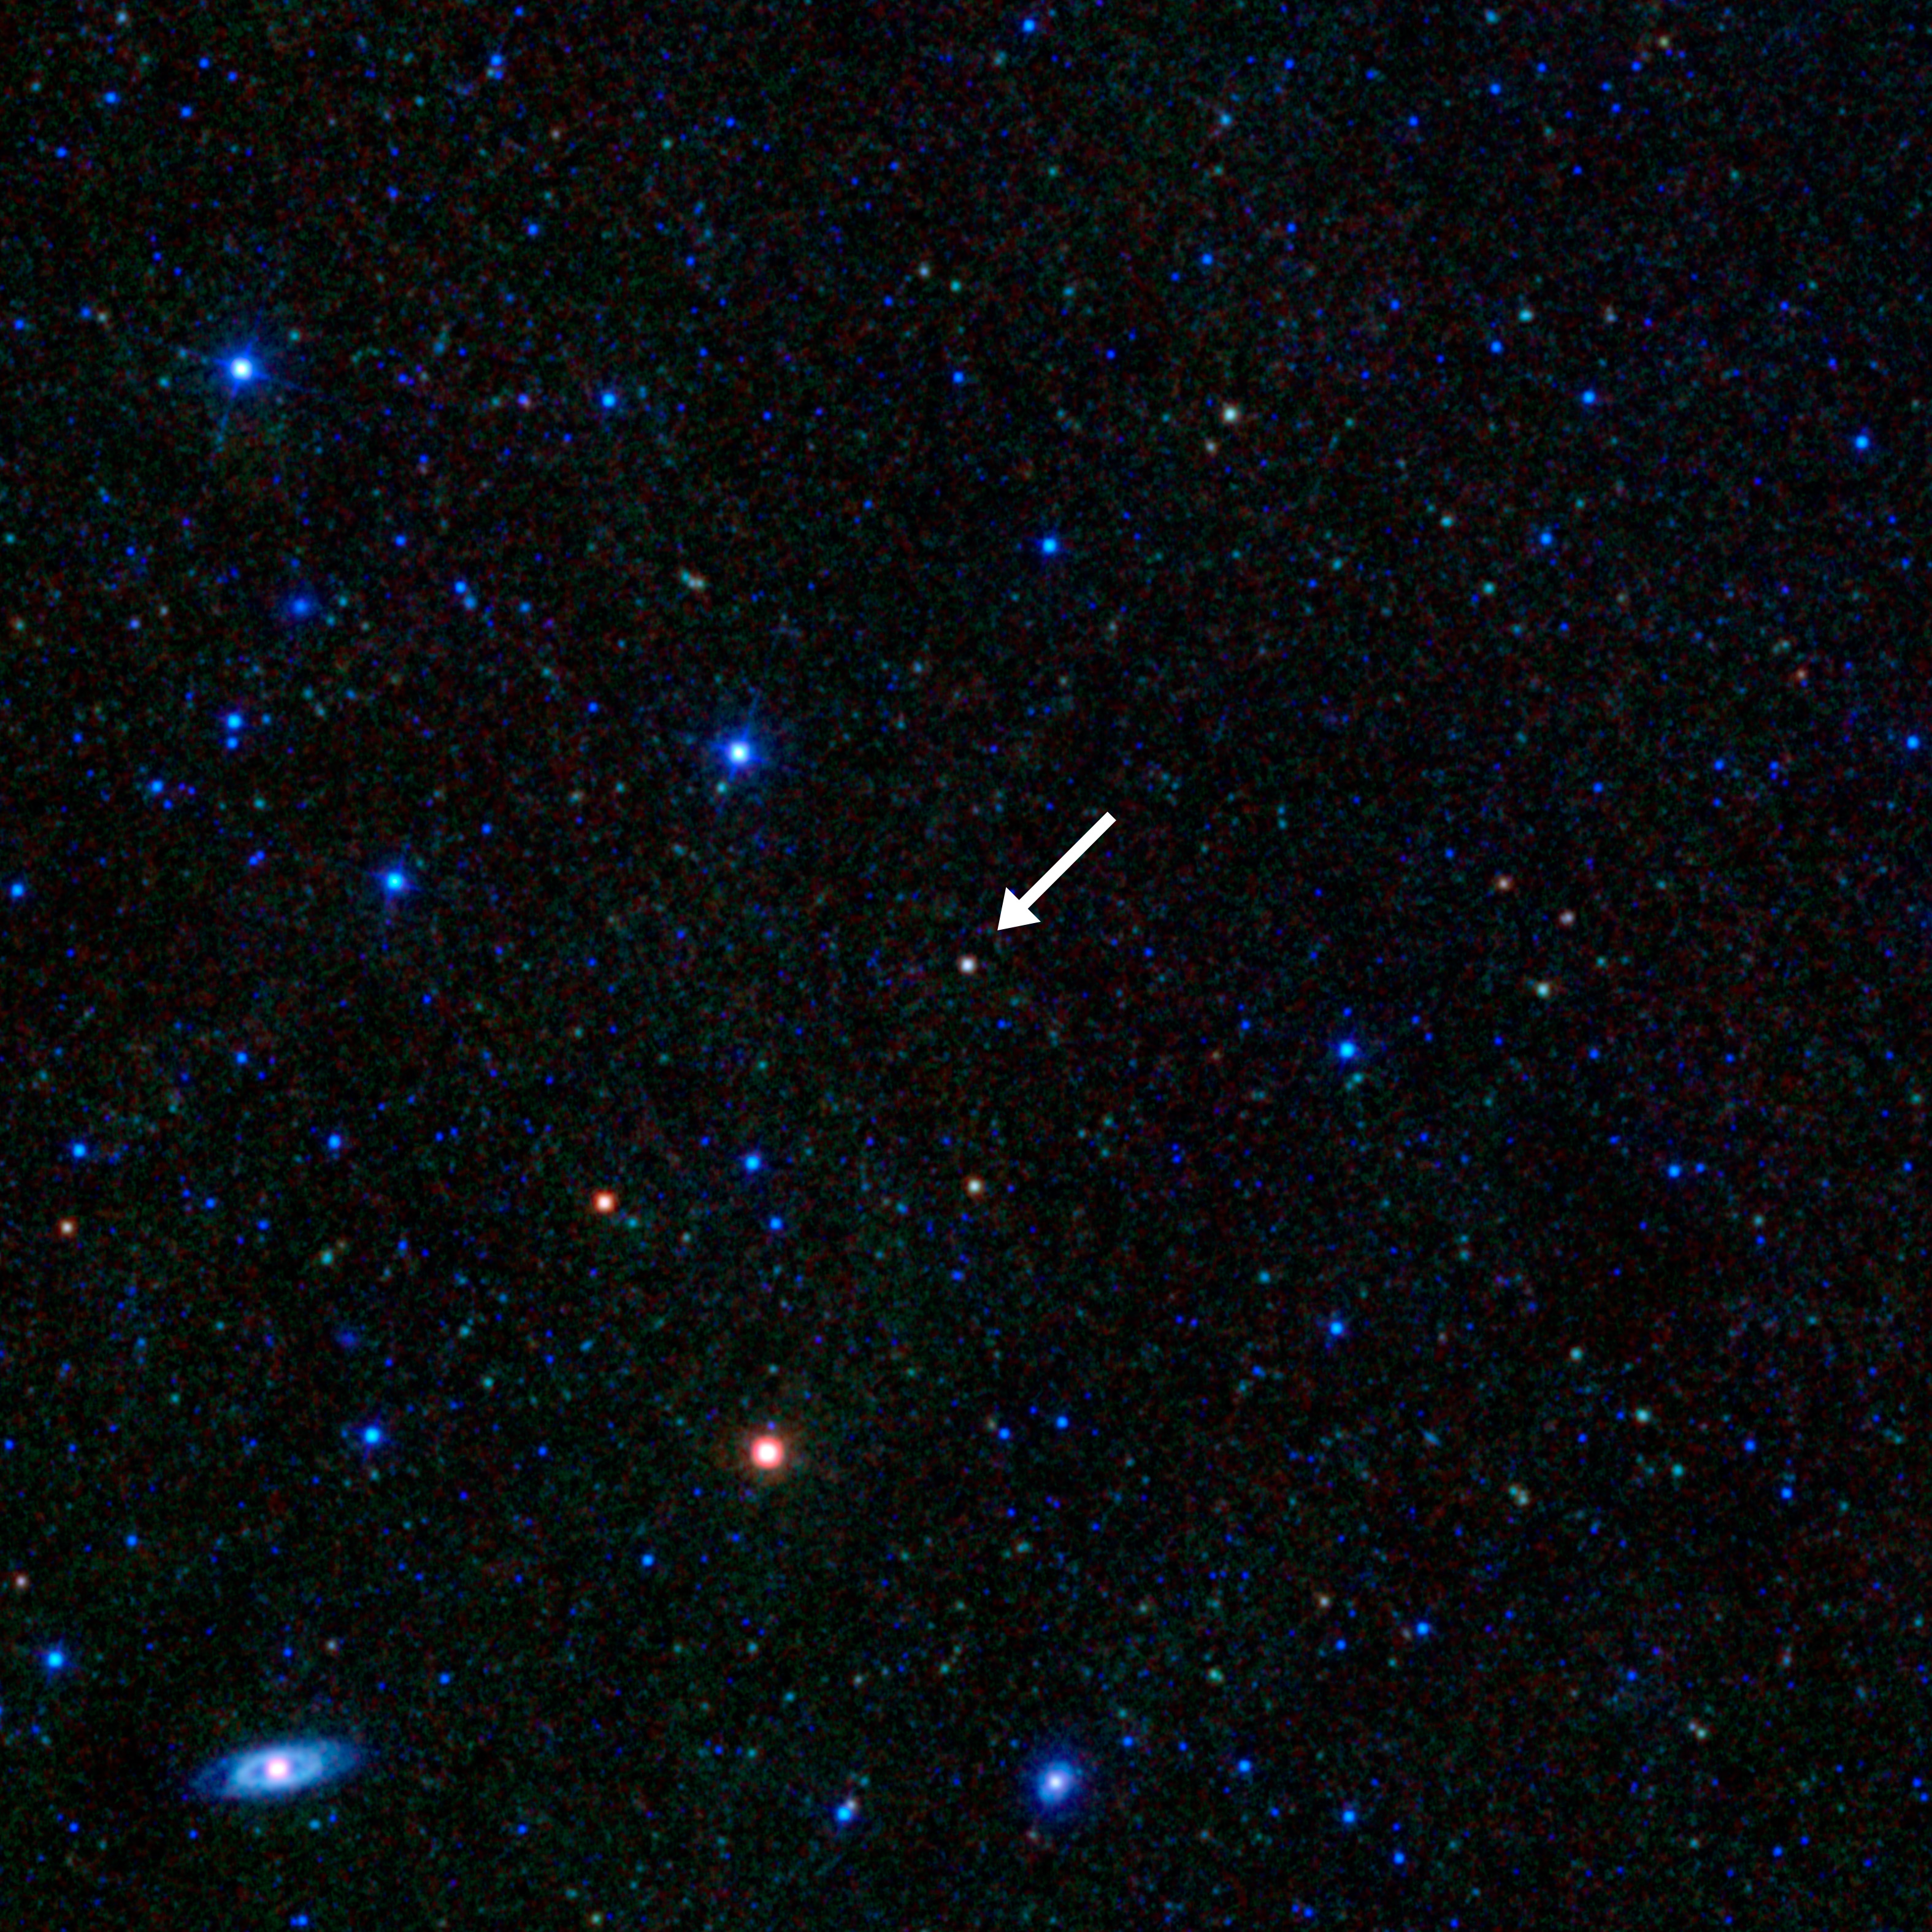 NASA'nın Geniş Alan Kızılötesi Araştırma Gezgini (WISE) tarafından çekilen bu görüntü, bir blazar'ı gösteriyor - bir galaksinin içinde, Dünya'ya doğru yönlendirilen bir jet ile doymak bilmez, süper kütleli bir kara delik.  Görüntü, çok daha parlak birkaç nesnenin yanında bir yıldız alanını gösteriyor.